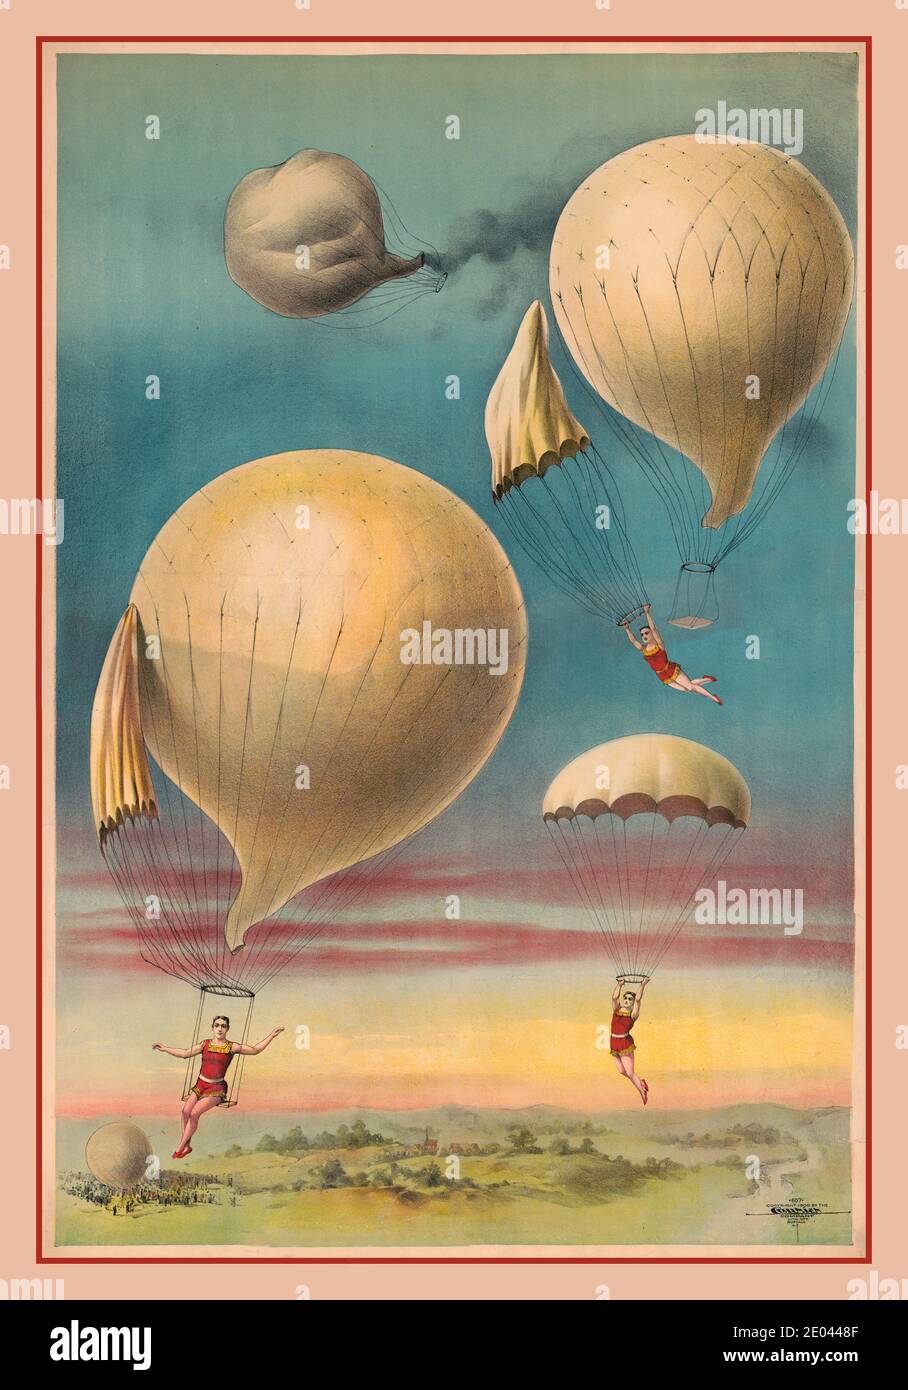 Vintage Illustration [Fallschirmspringen aus Luftballons] Lithograph Circus Unterhaltung Balloon Fantasy Balloon Datum: Buffalo, NY., Courier Lith. Co., c1900. Chromolithograph ; Circus - Co. 1900, Stockfoto